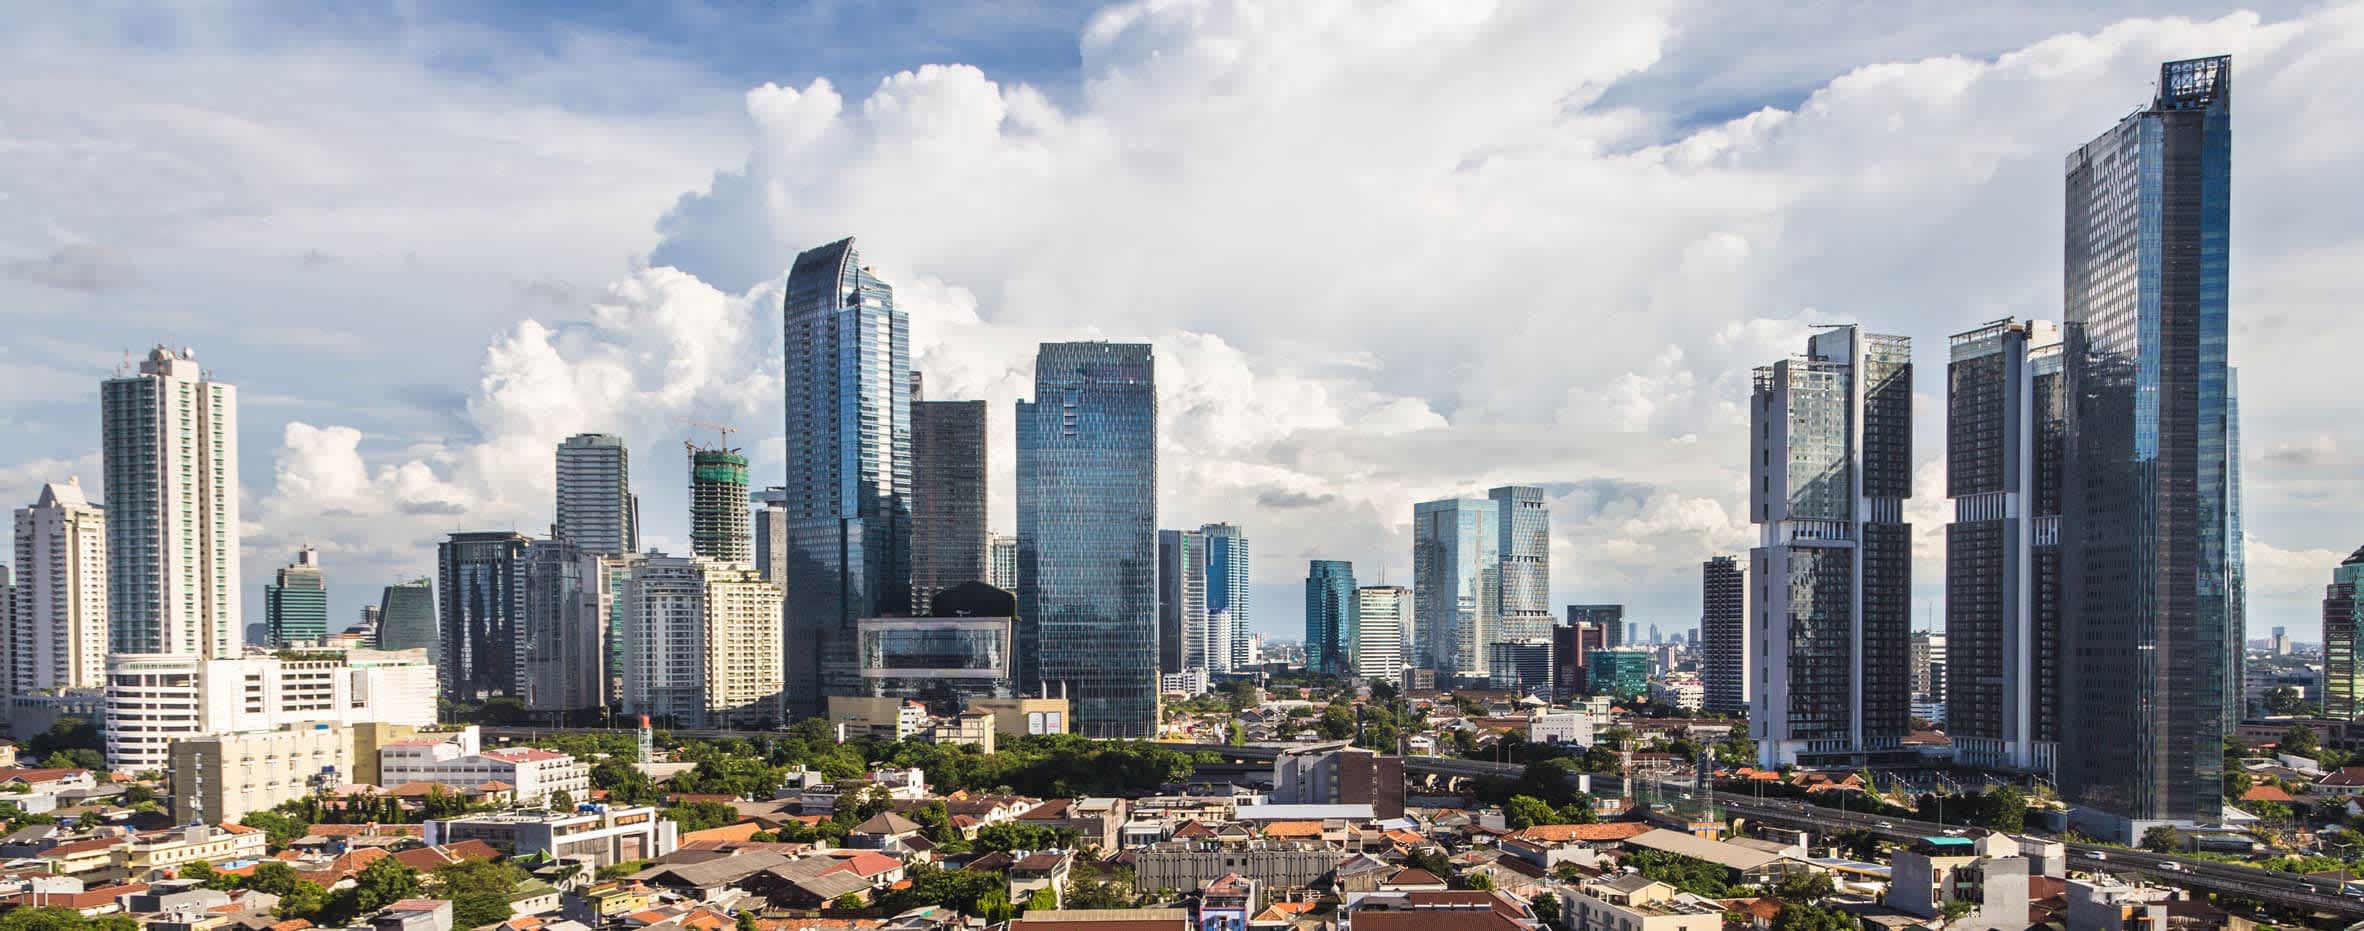 Jakarta's Skyline